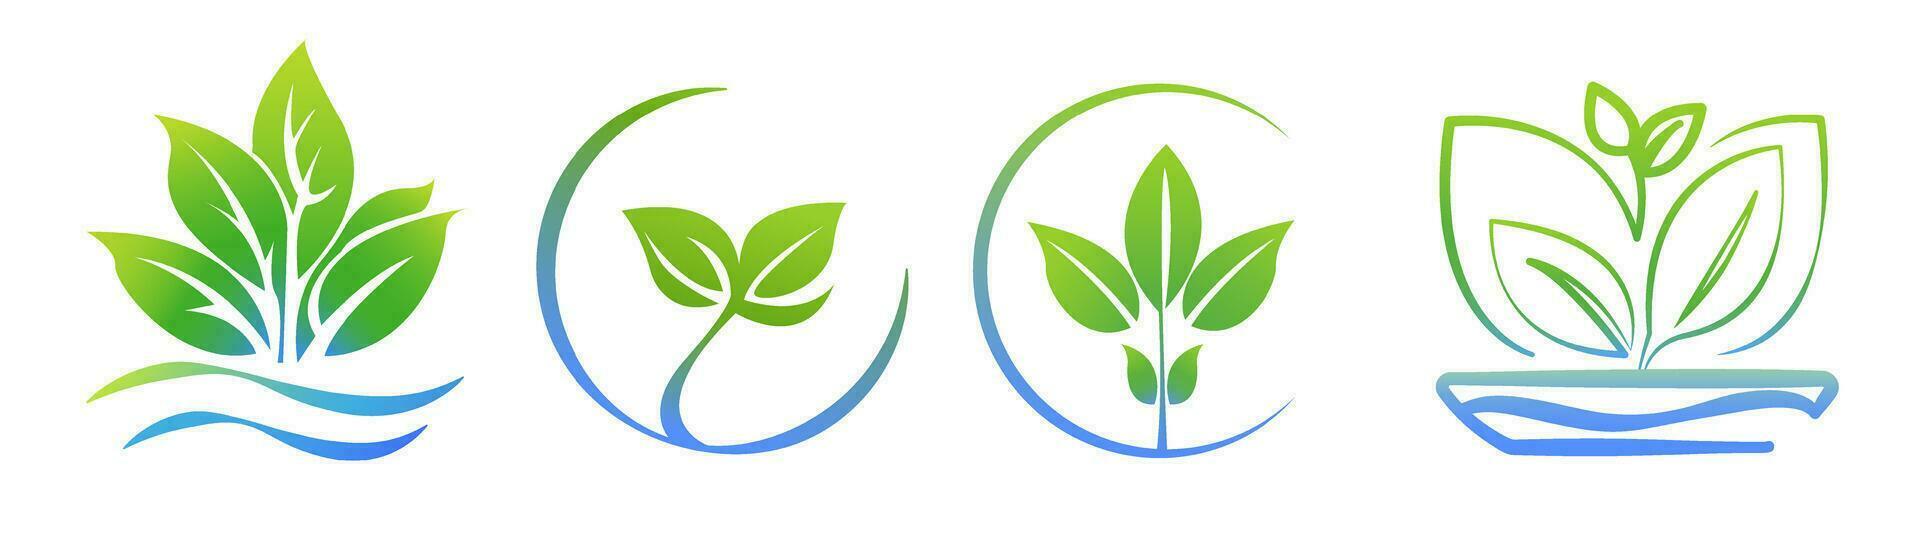 hidroponia aeropónico logo modelo conjunto 4 4 en 1, salud comida icono, orgánico vegetal jardín. Respetuoso del medio ambiente creciente. hojas, hoja logo. vector ilustración